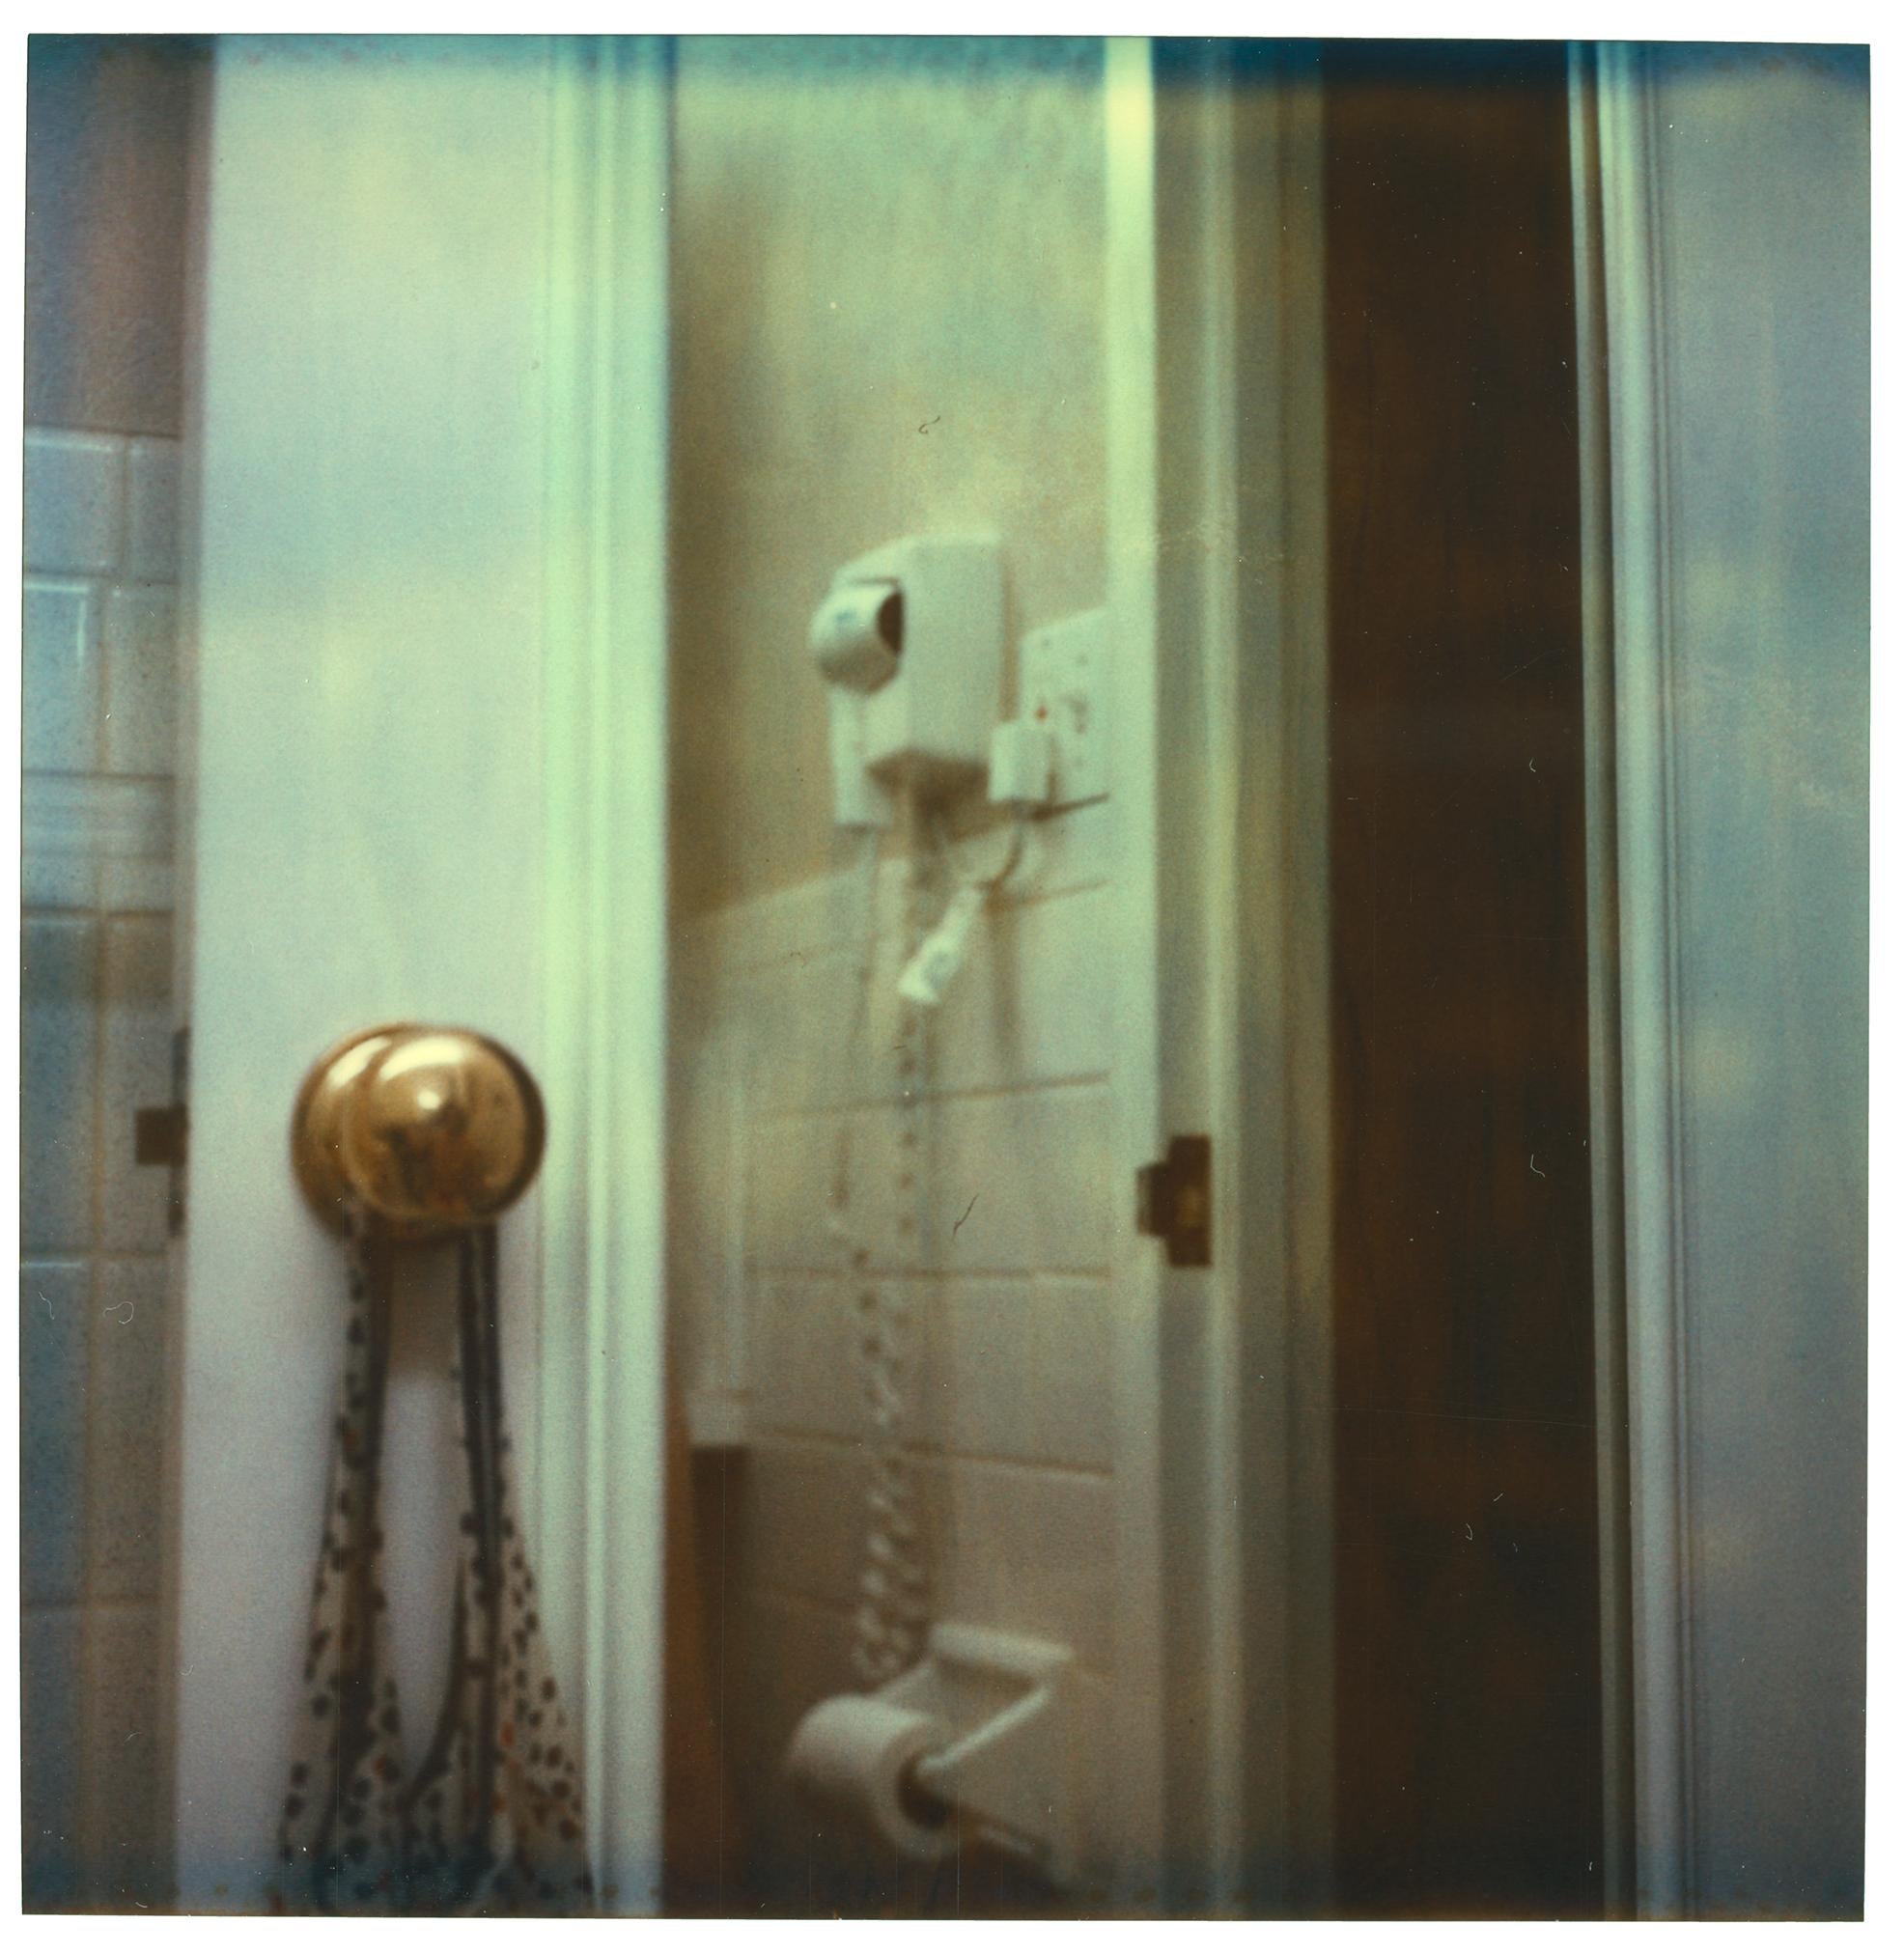 Shelbourne Hotel - Strange Love, 4 pieces, 100x100cm each - Photograph by Stefanie Schneider